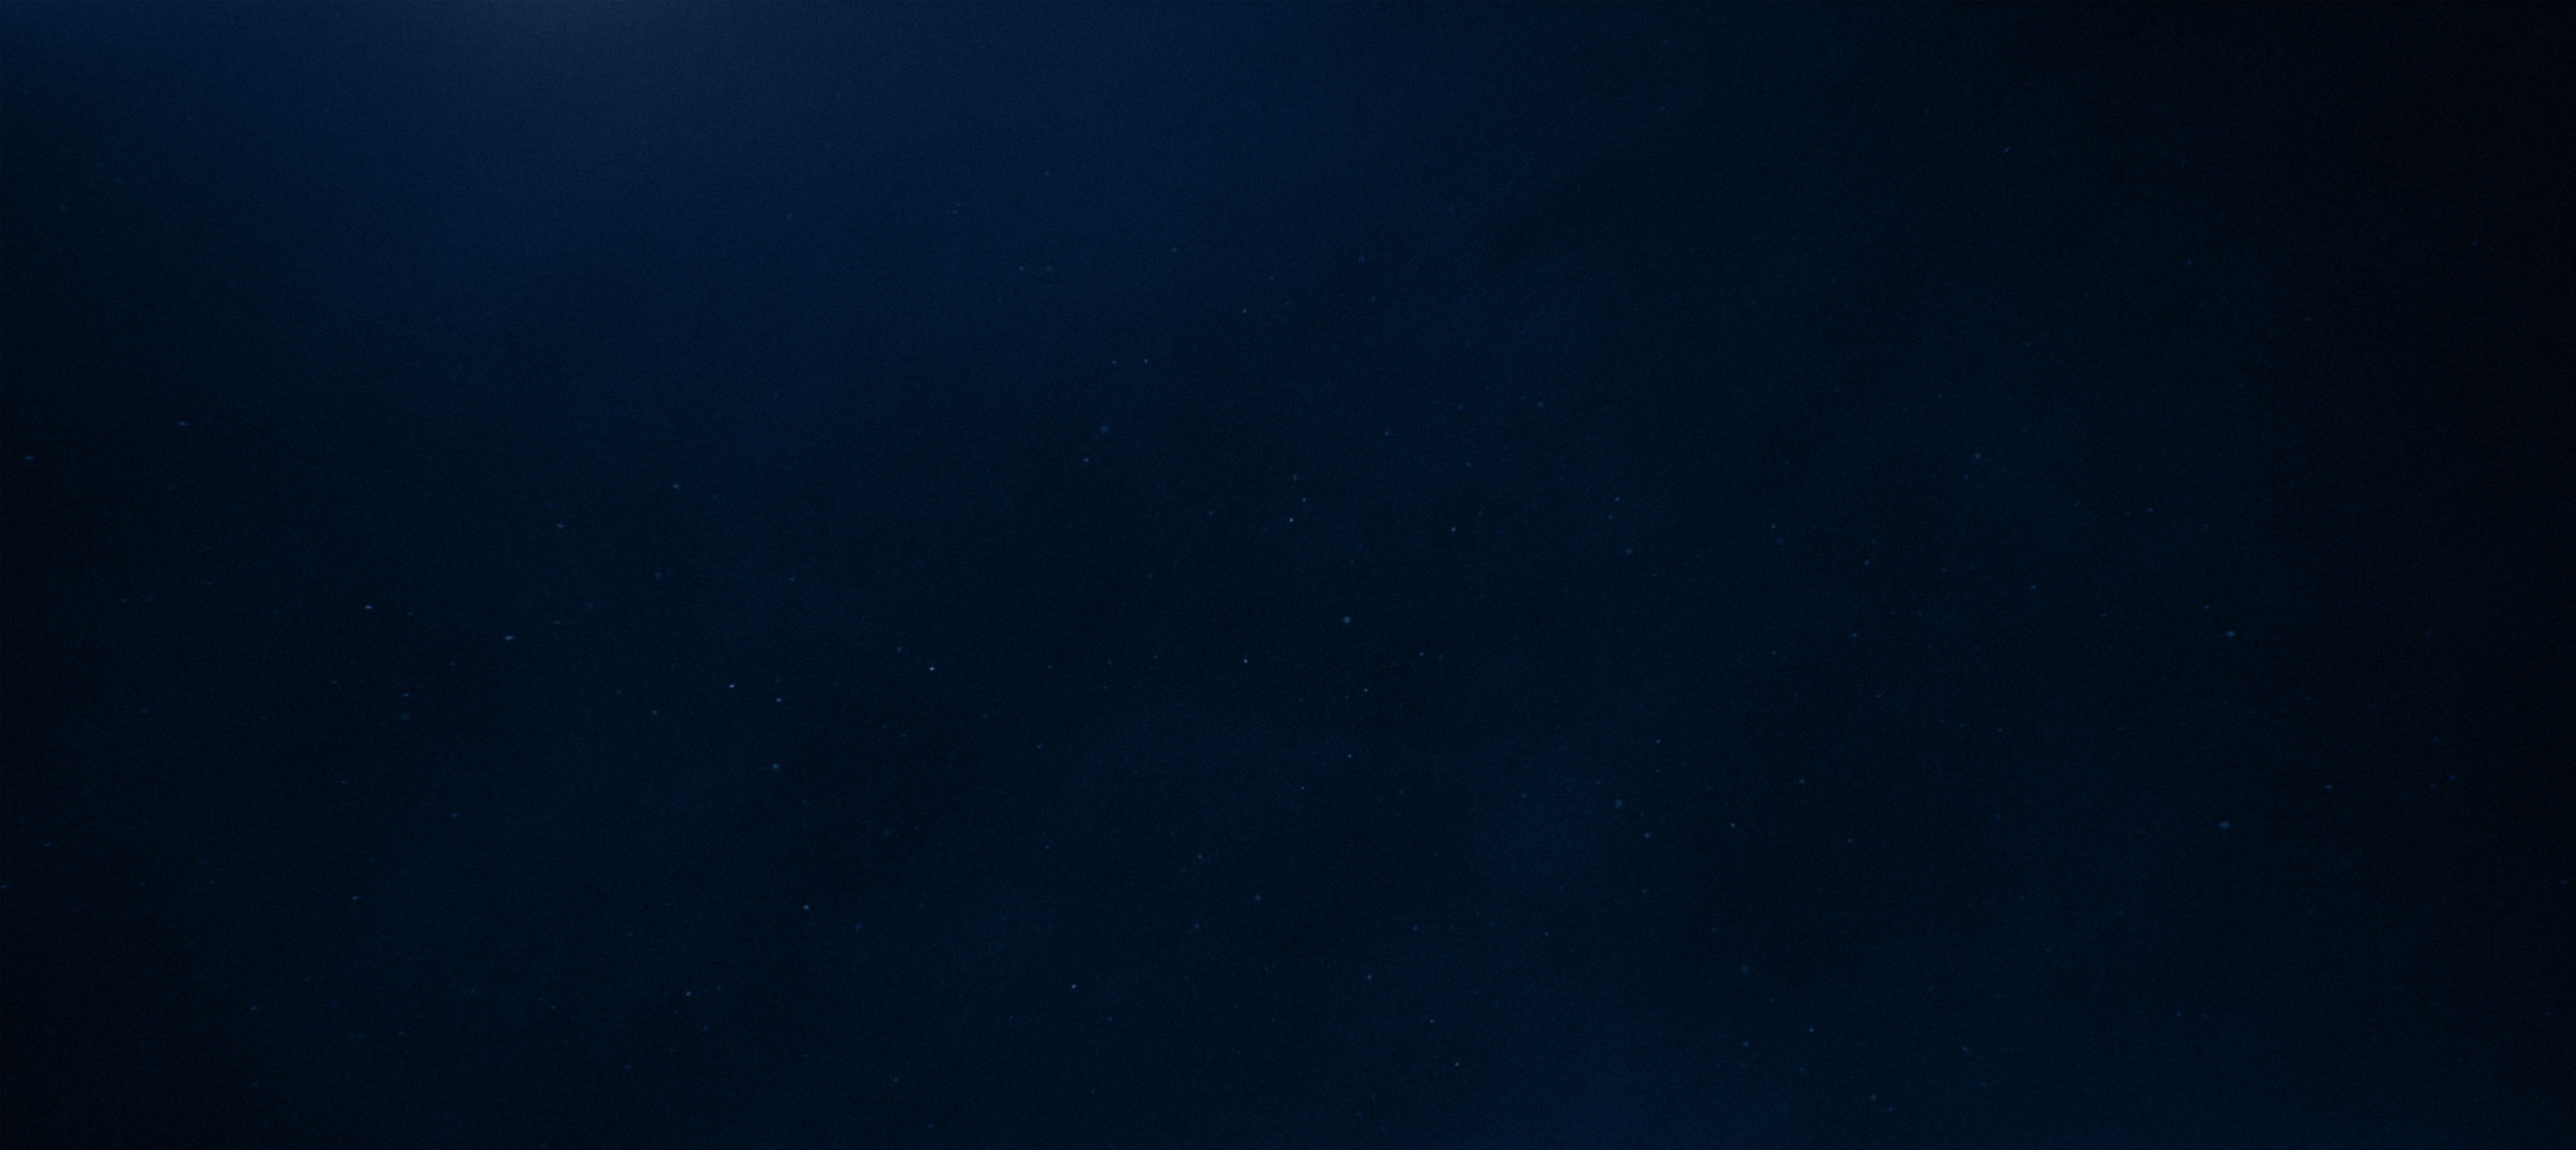 Textura de fondo - Cielo azulado nocturno con estrellas